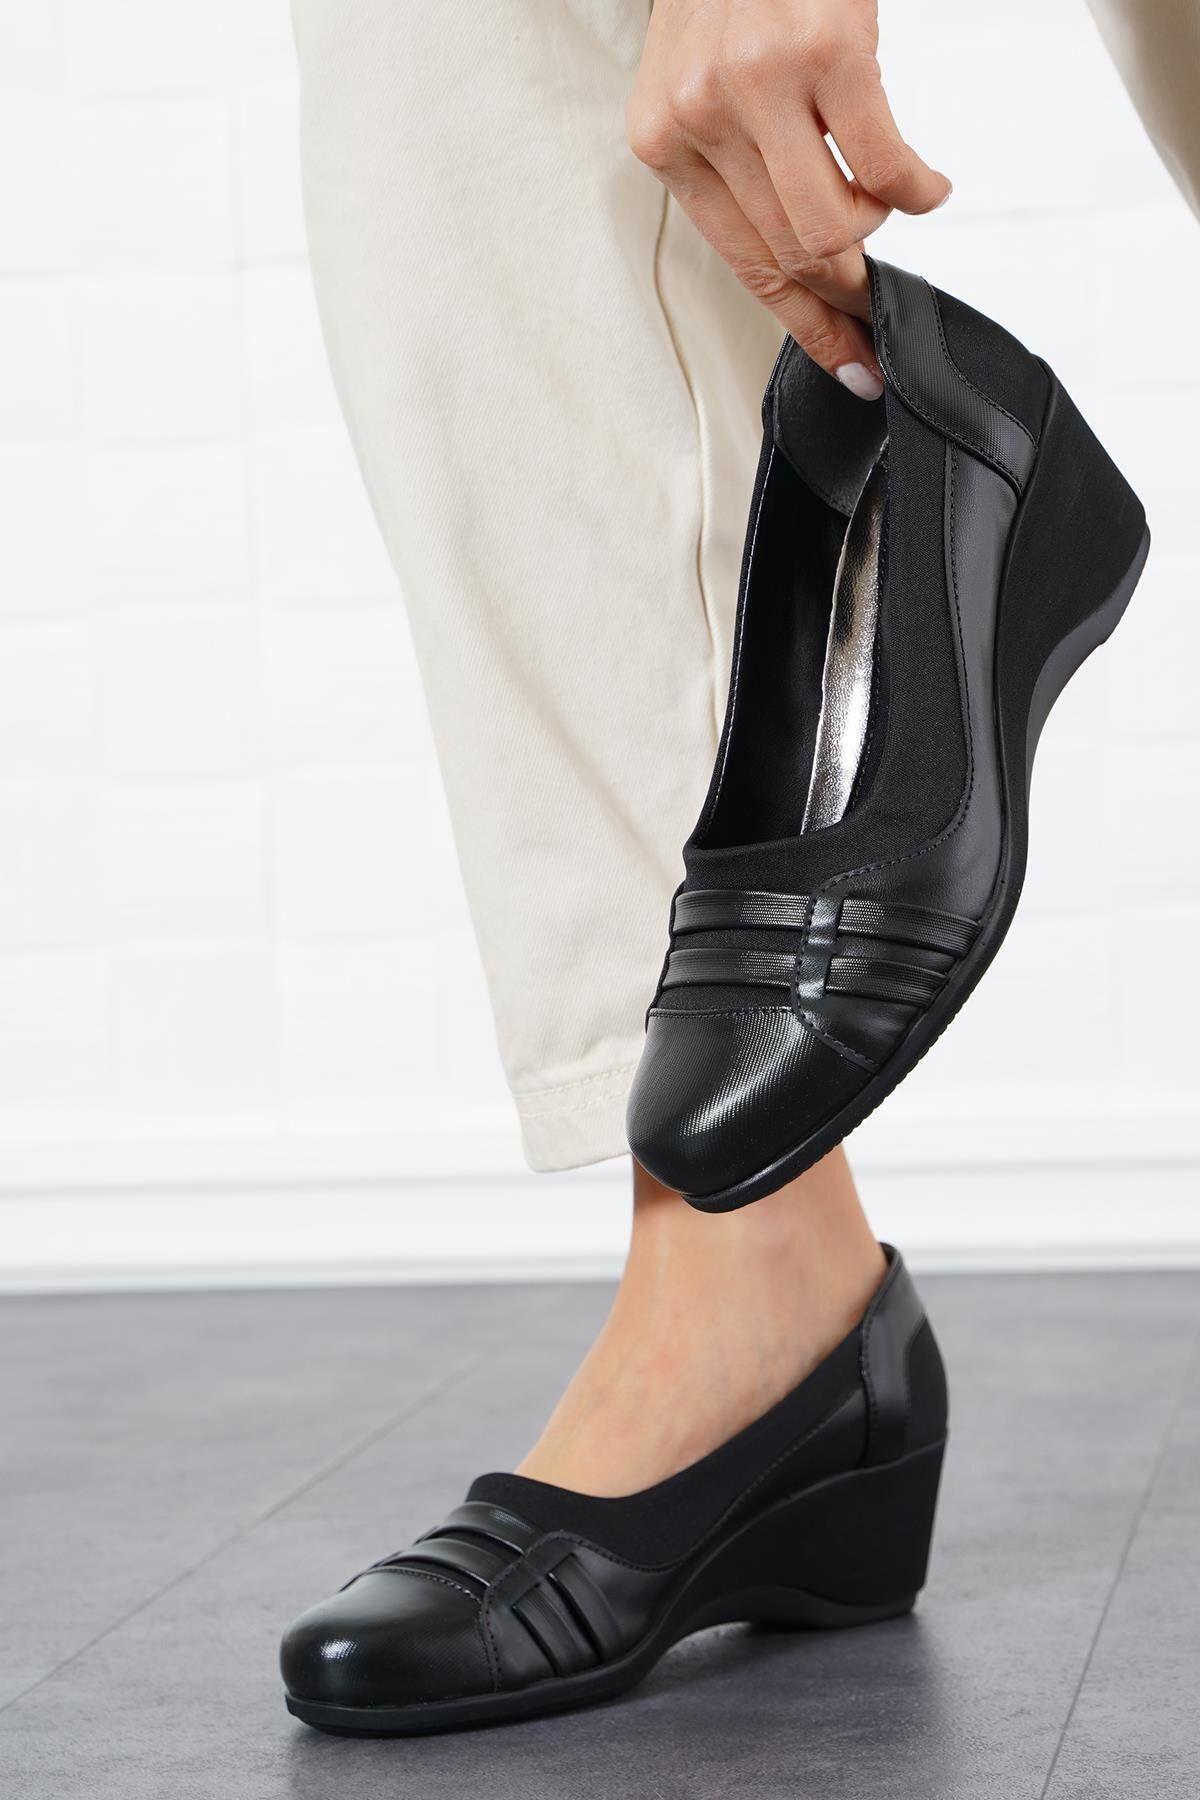 Moda Pie Celeste Çift Kuşak Kadın Dolgu Topuklu Ayakkabı Siyah Çizgili